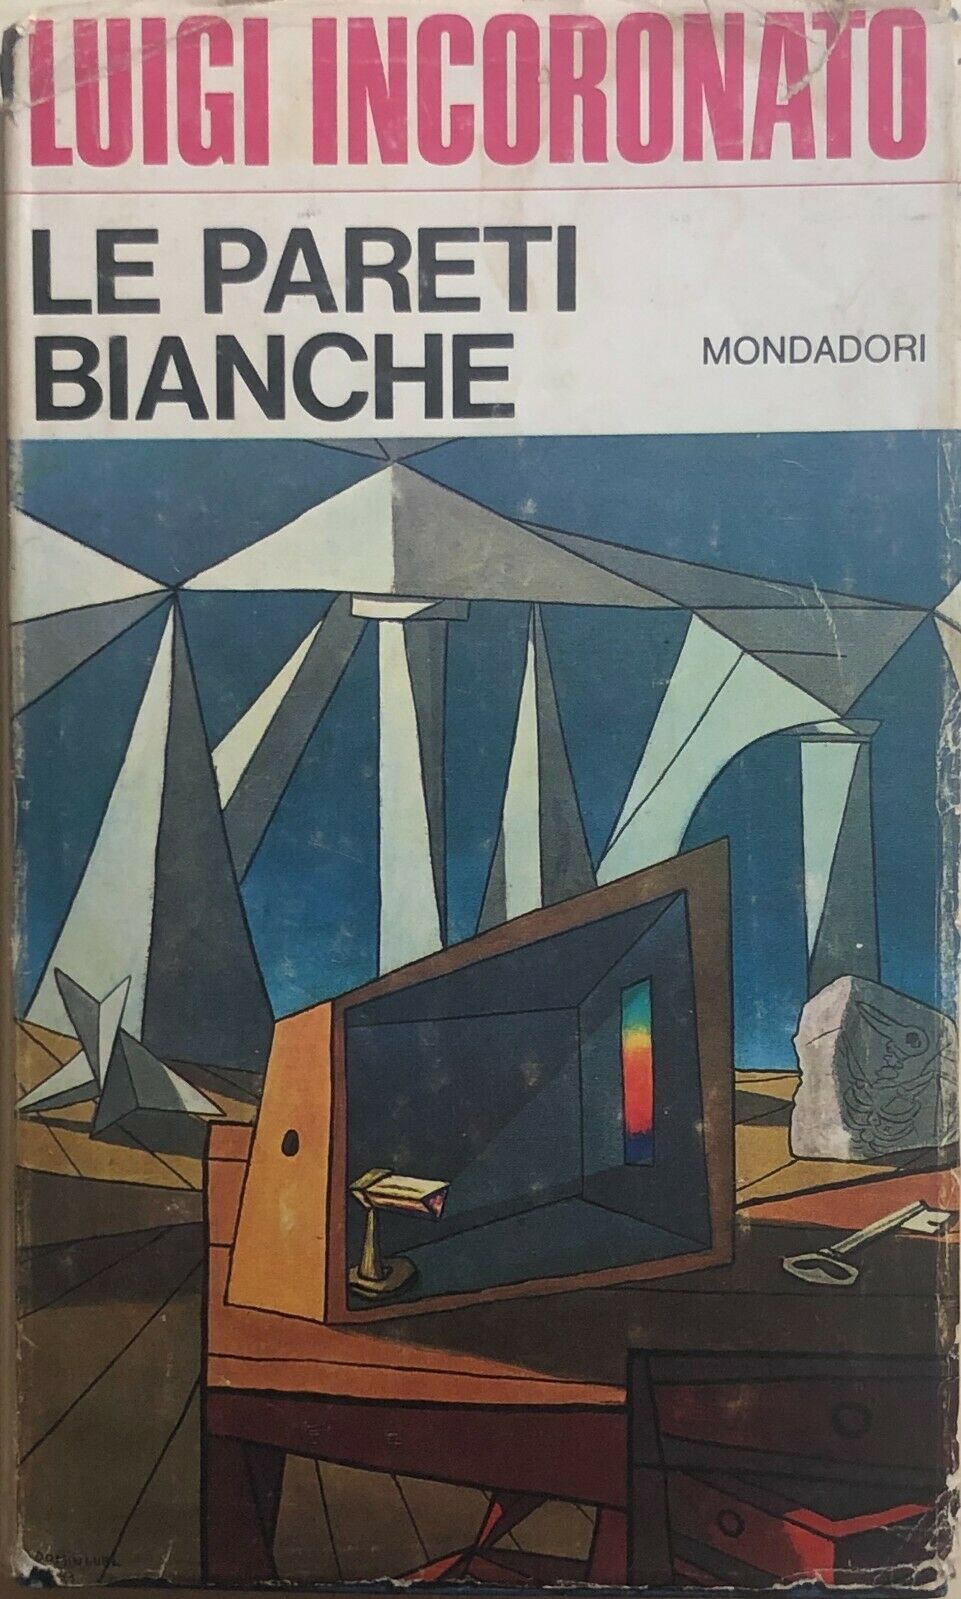 Le pareti bianche di Luigi Incoronato, 1968, Mondadori